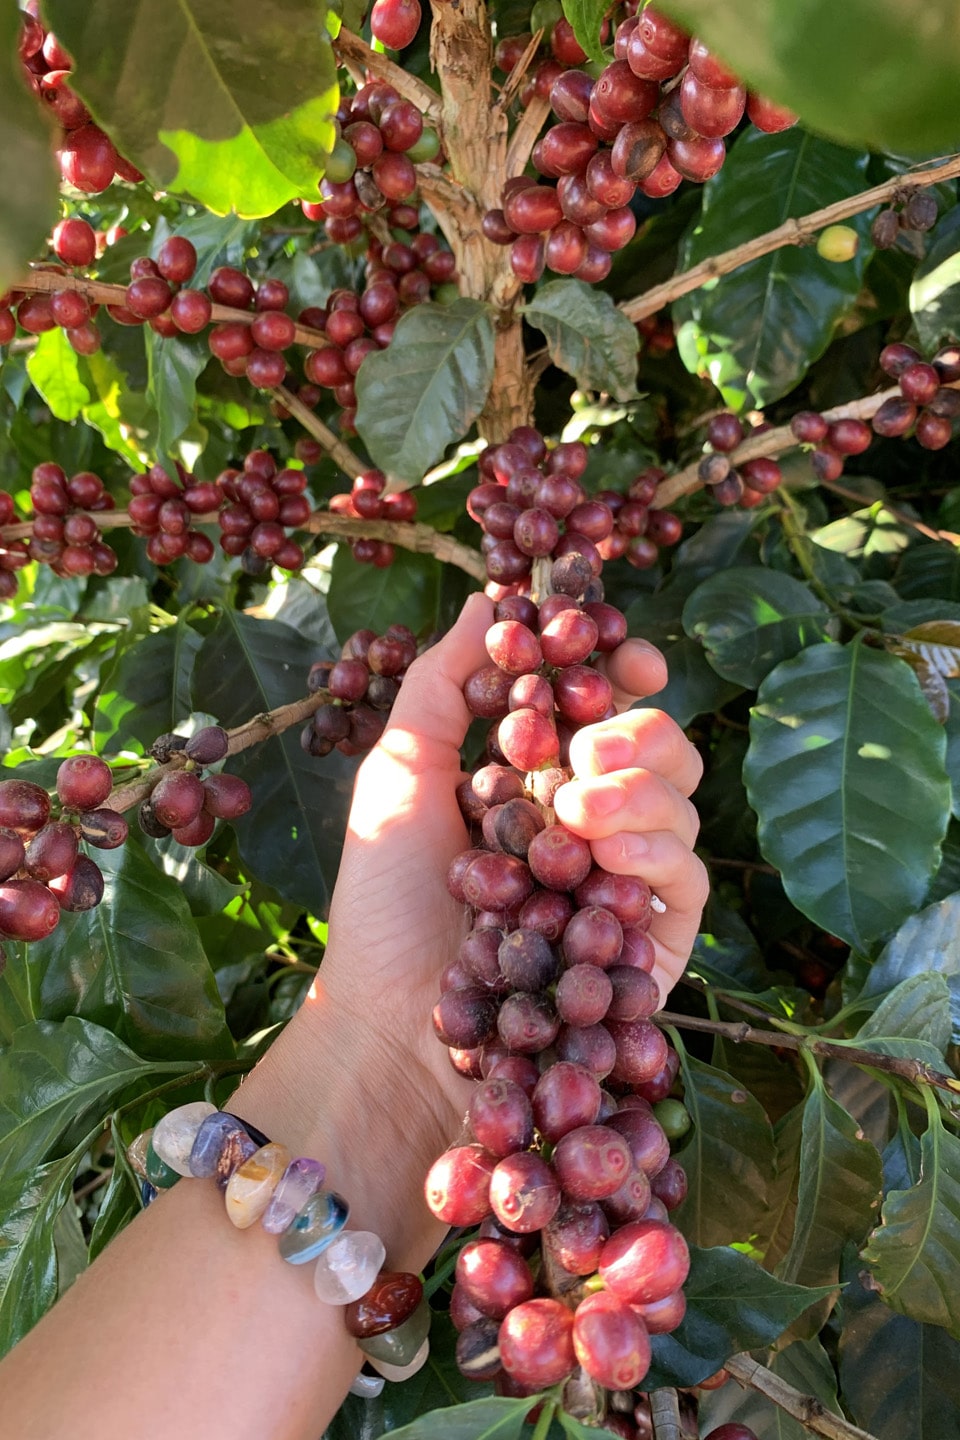 Coffee cherries reaching peak ripeness